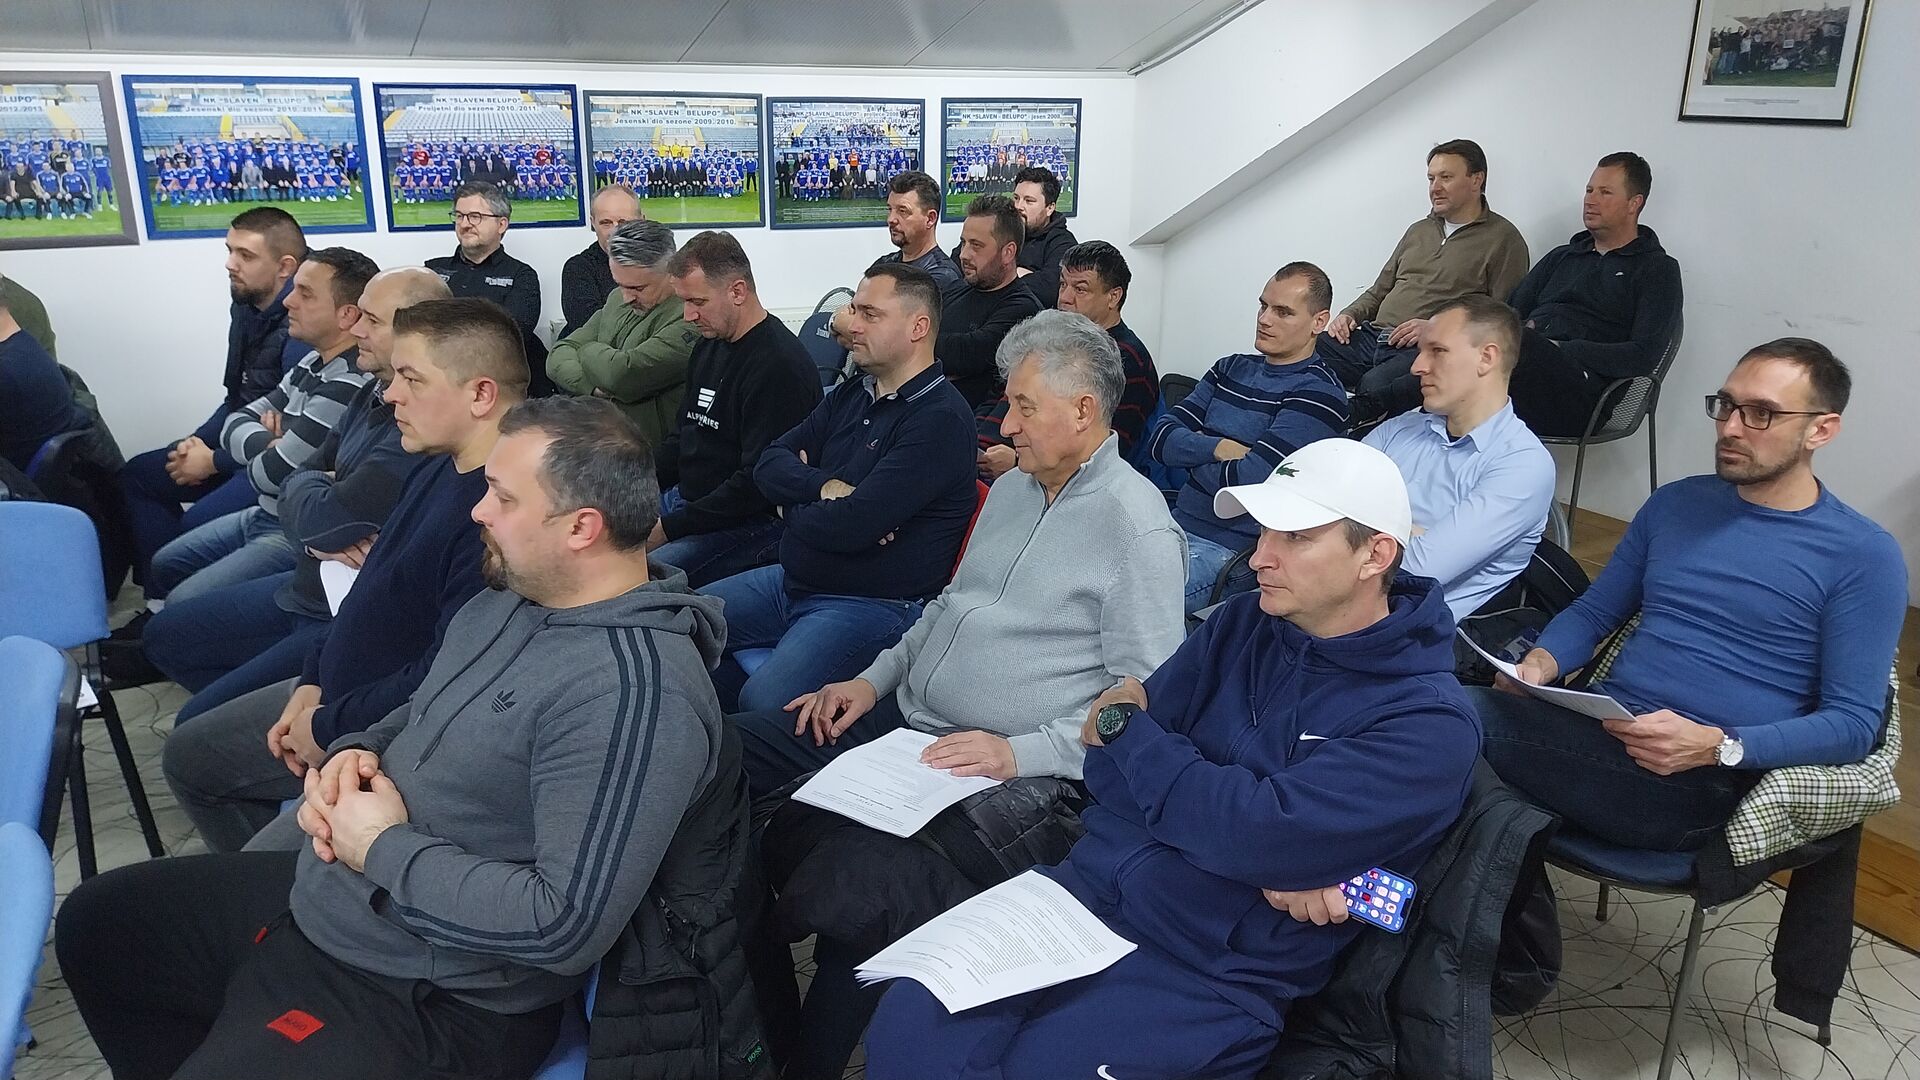 Održana izborna skupština Škole nogometa Grada Koprivnice